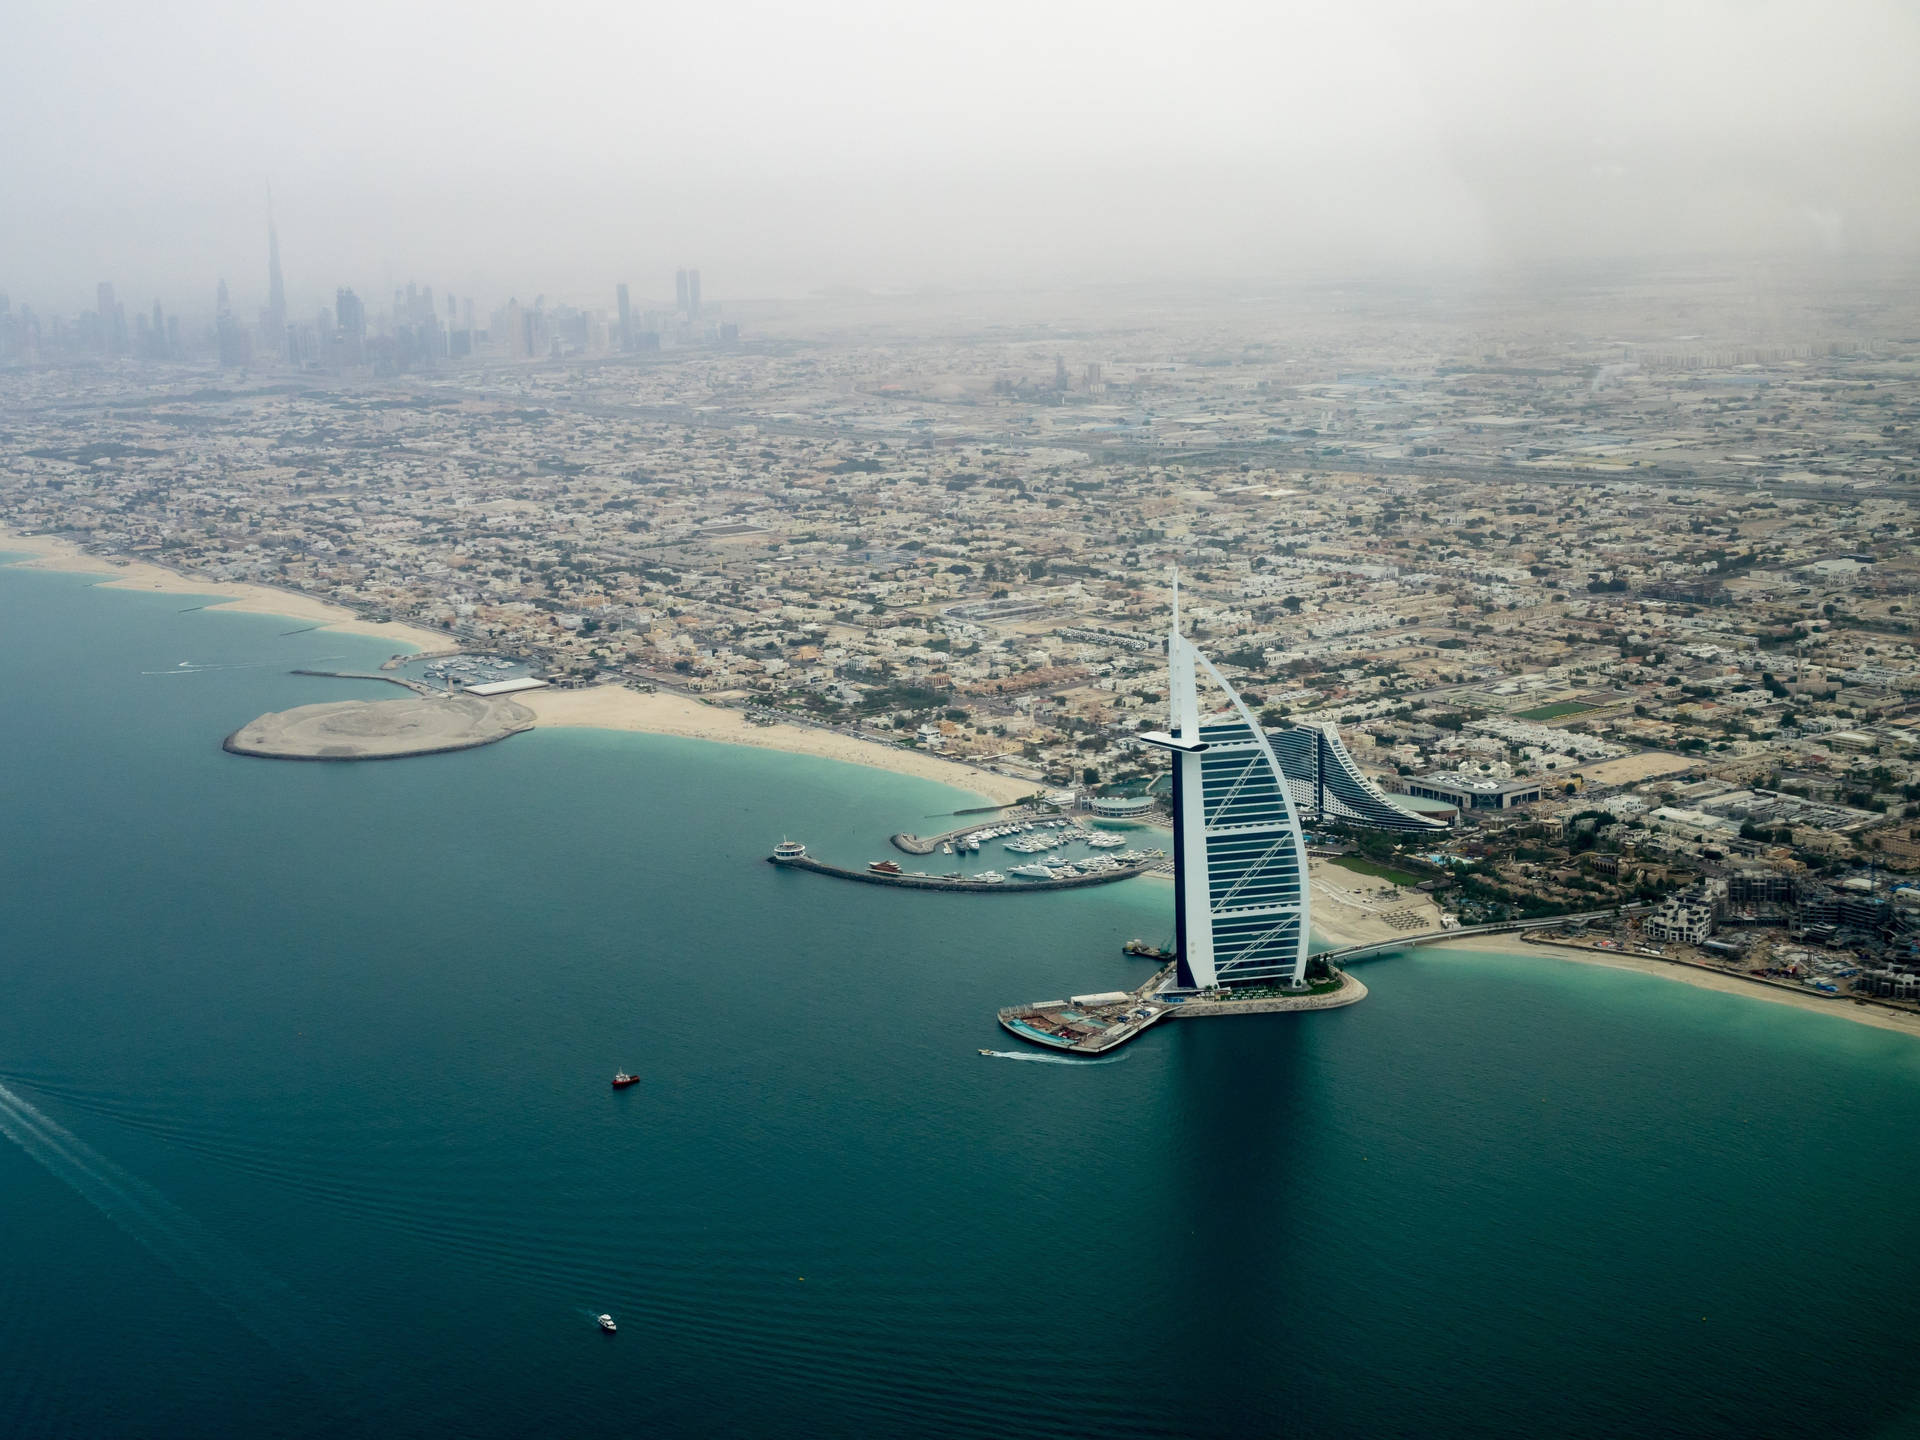 Vistaaerea Dello Spettacolare Burj Al Arab A Dubai Sfondo